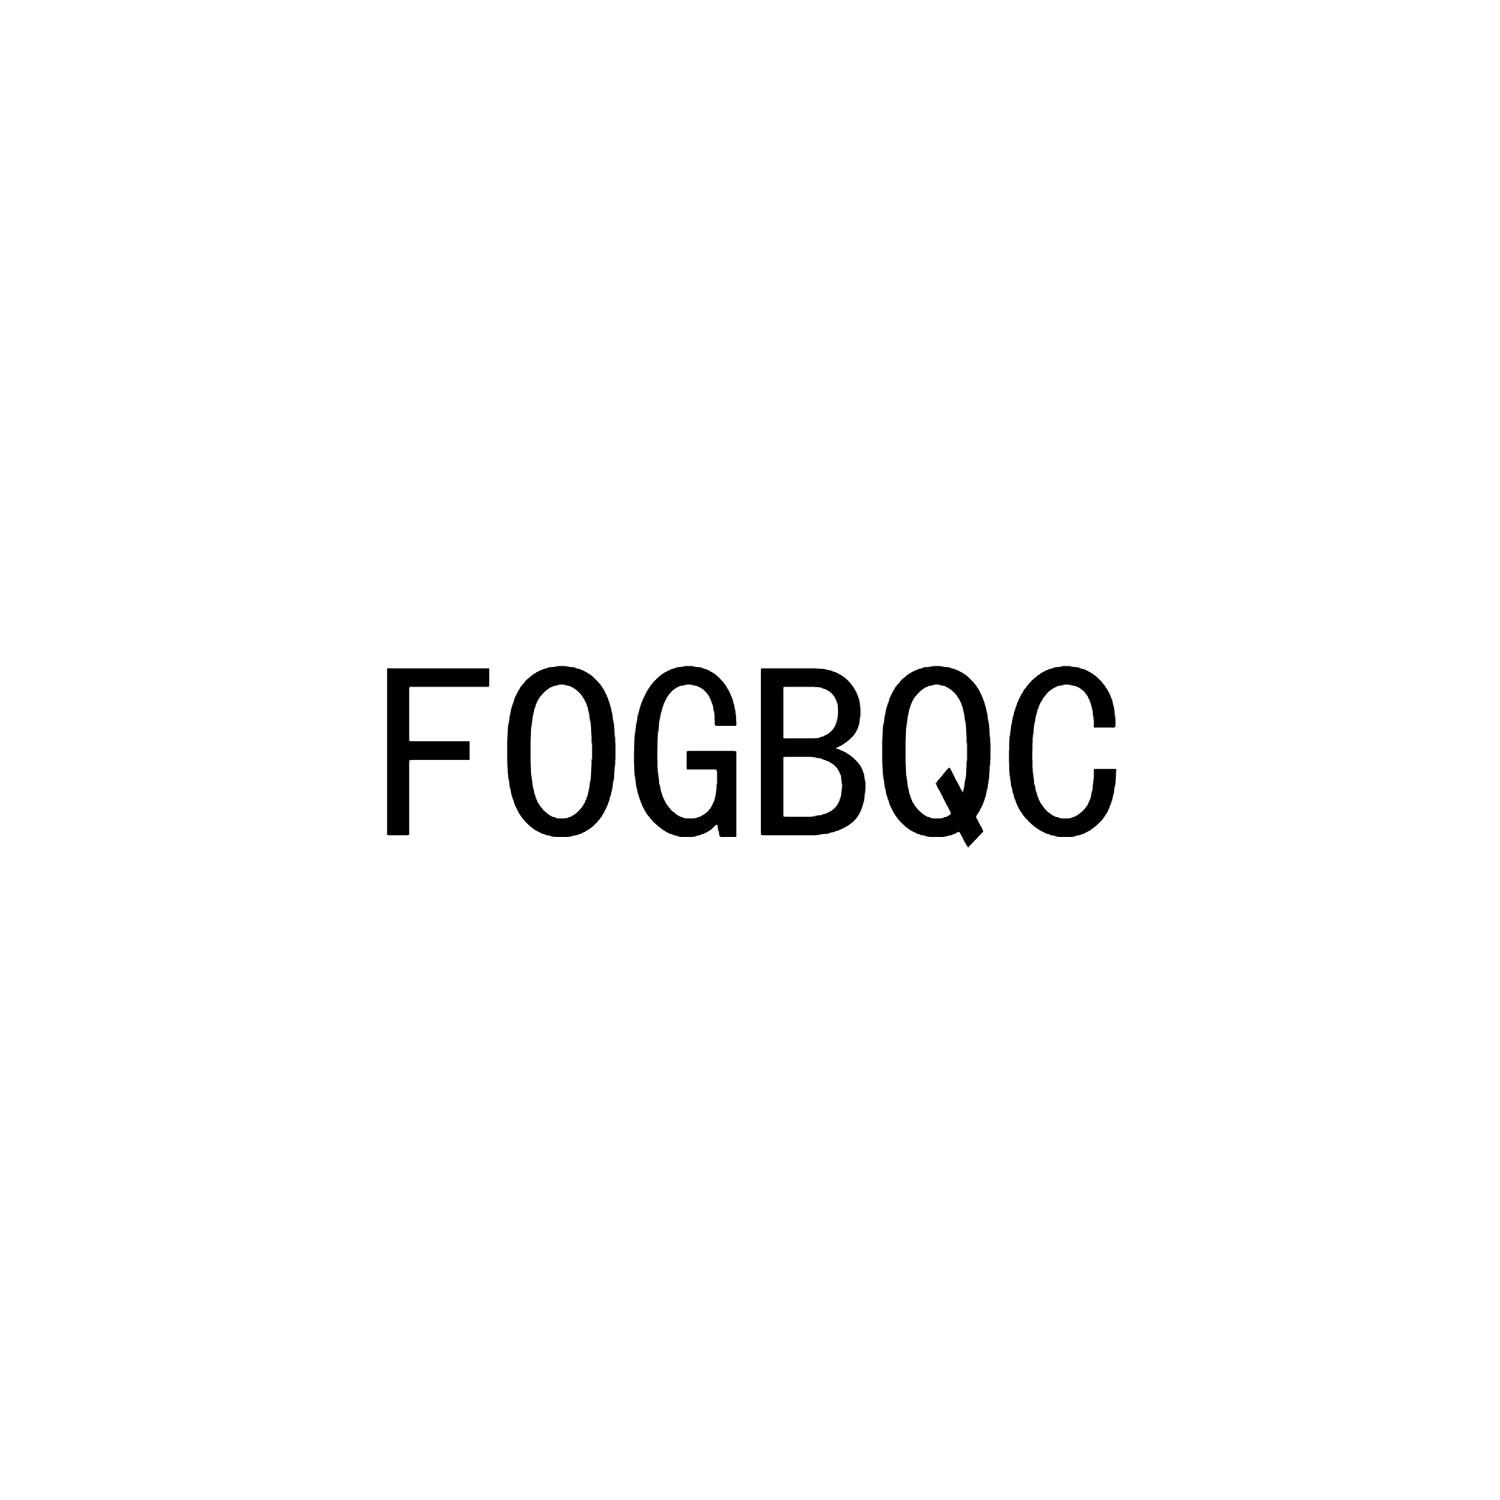 FOGBQC